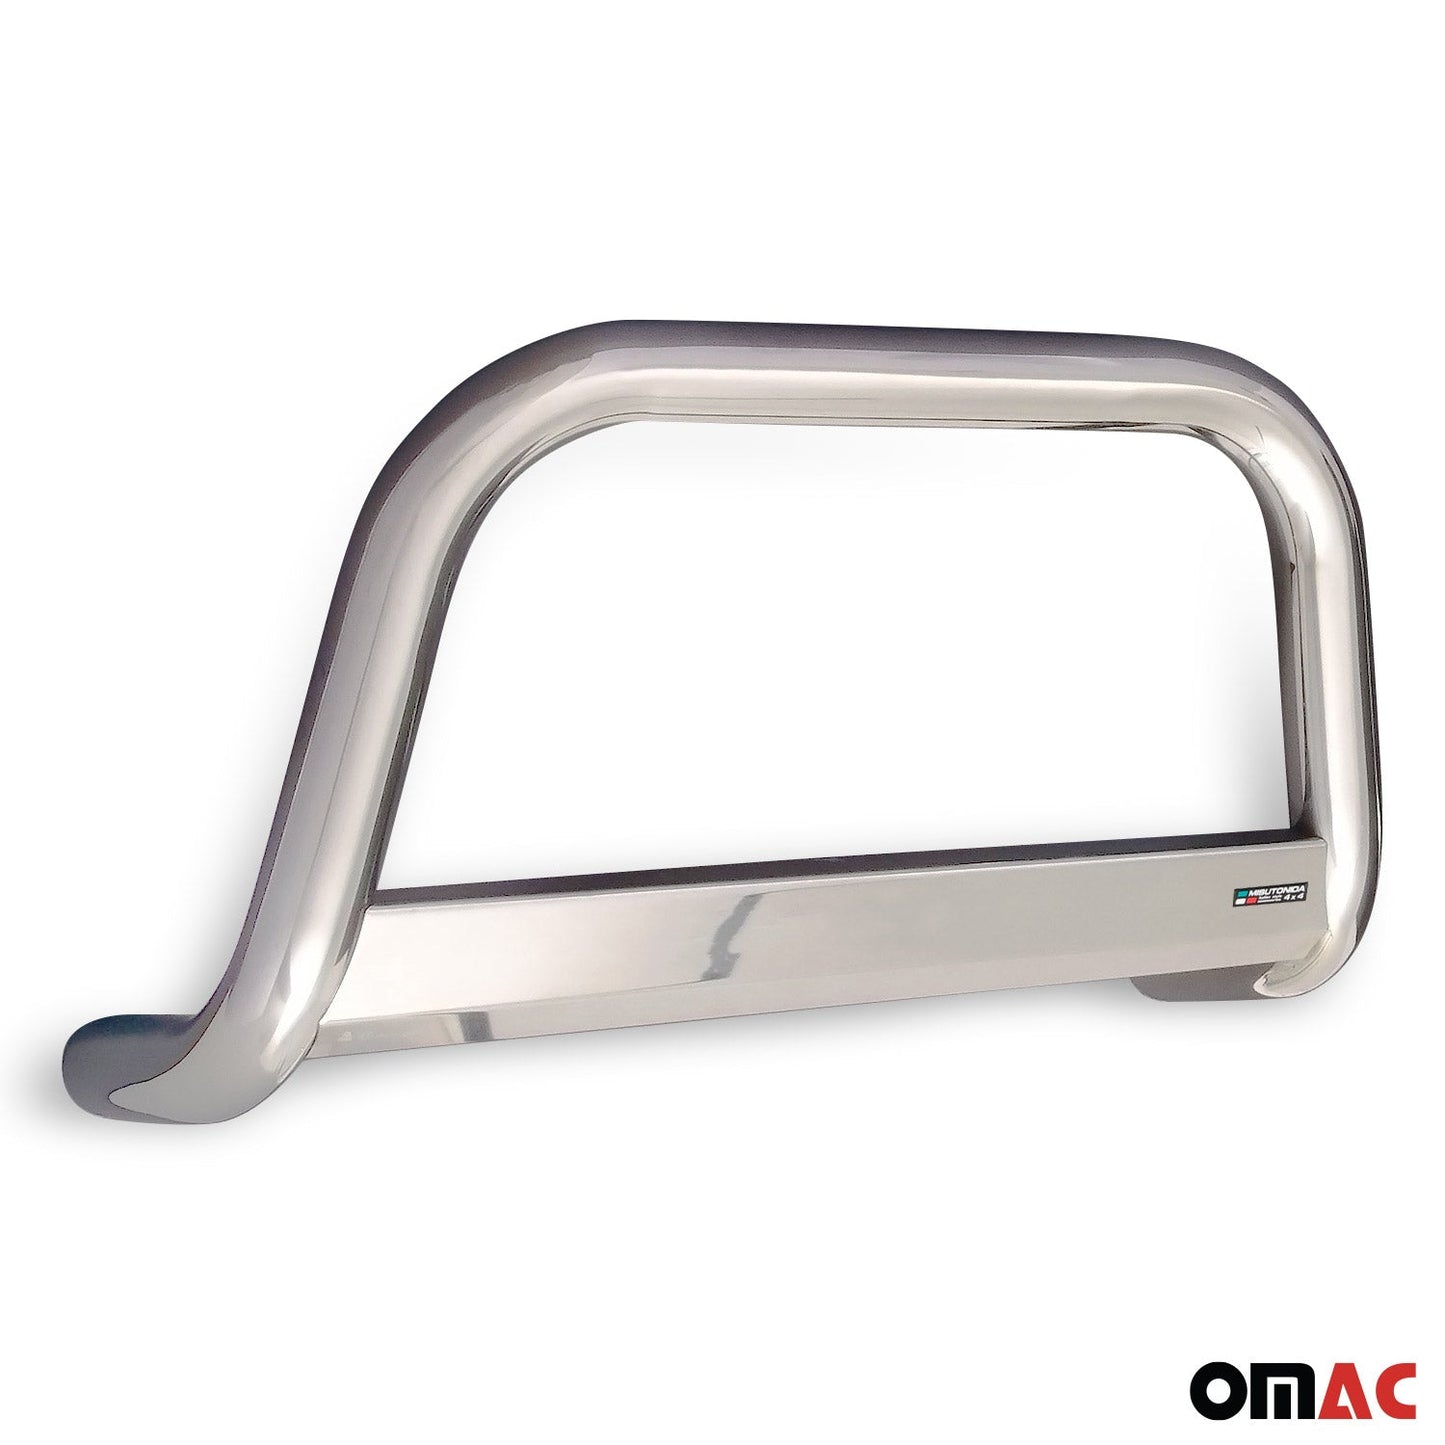 OMAC Bull Bar Push Front Bumper Grille for Mazda CX-5 2015-2016 Silver 1 Pc 4621MSBB095F